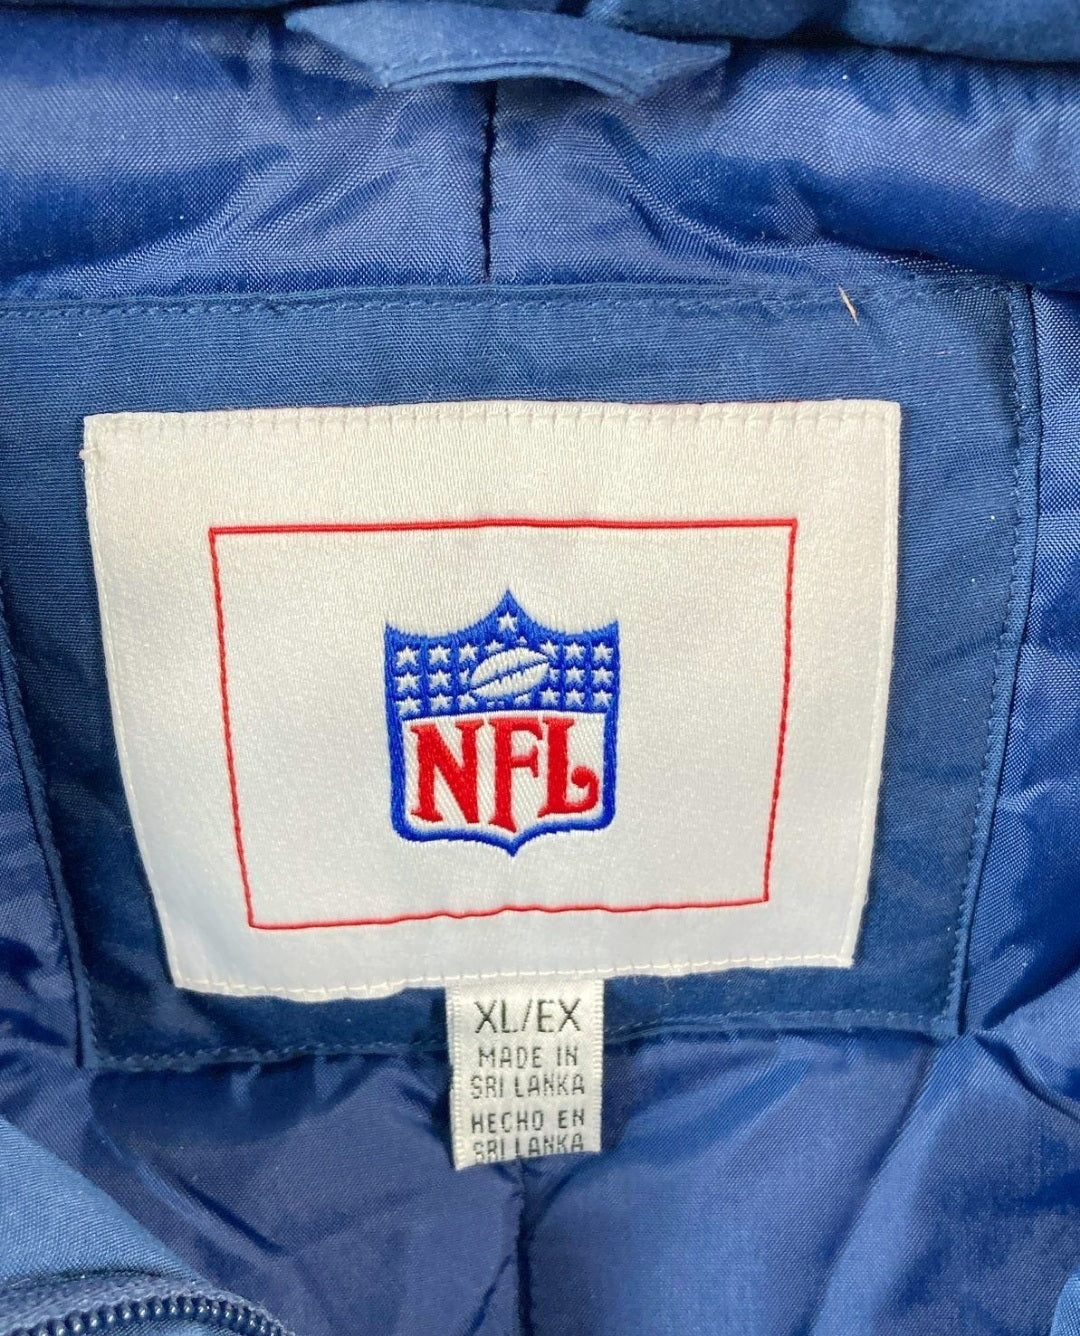 NFL Denver Broncos Jacket & Matching Broncos Gloves (Size XL) Blue/Orange/Black